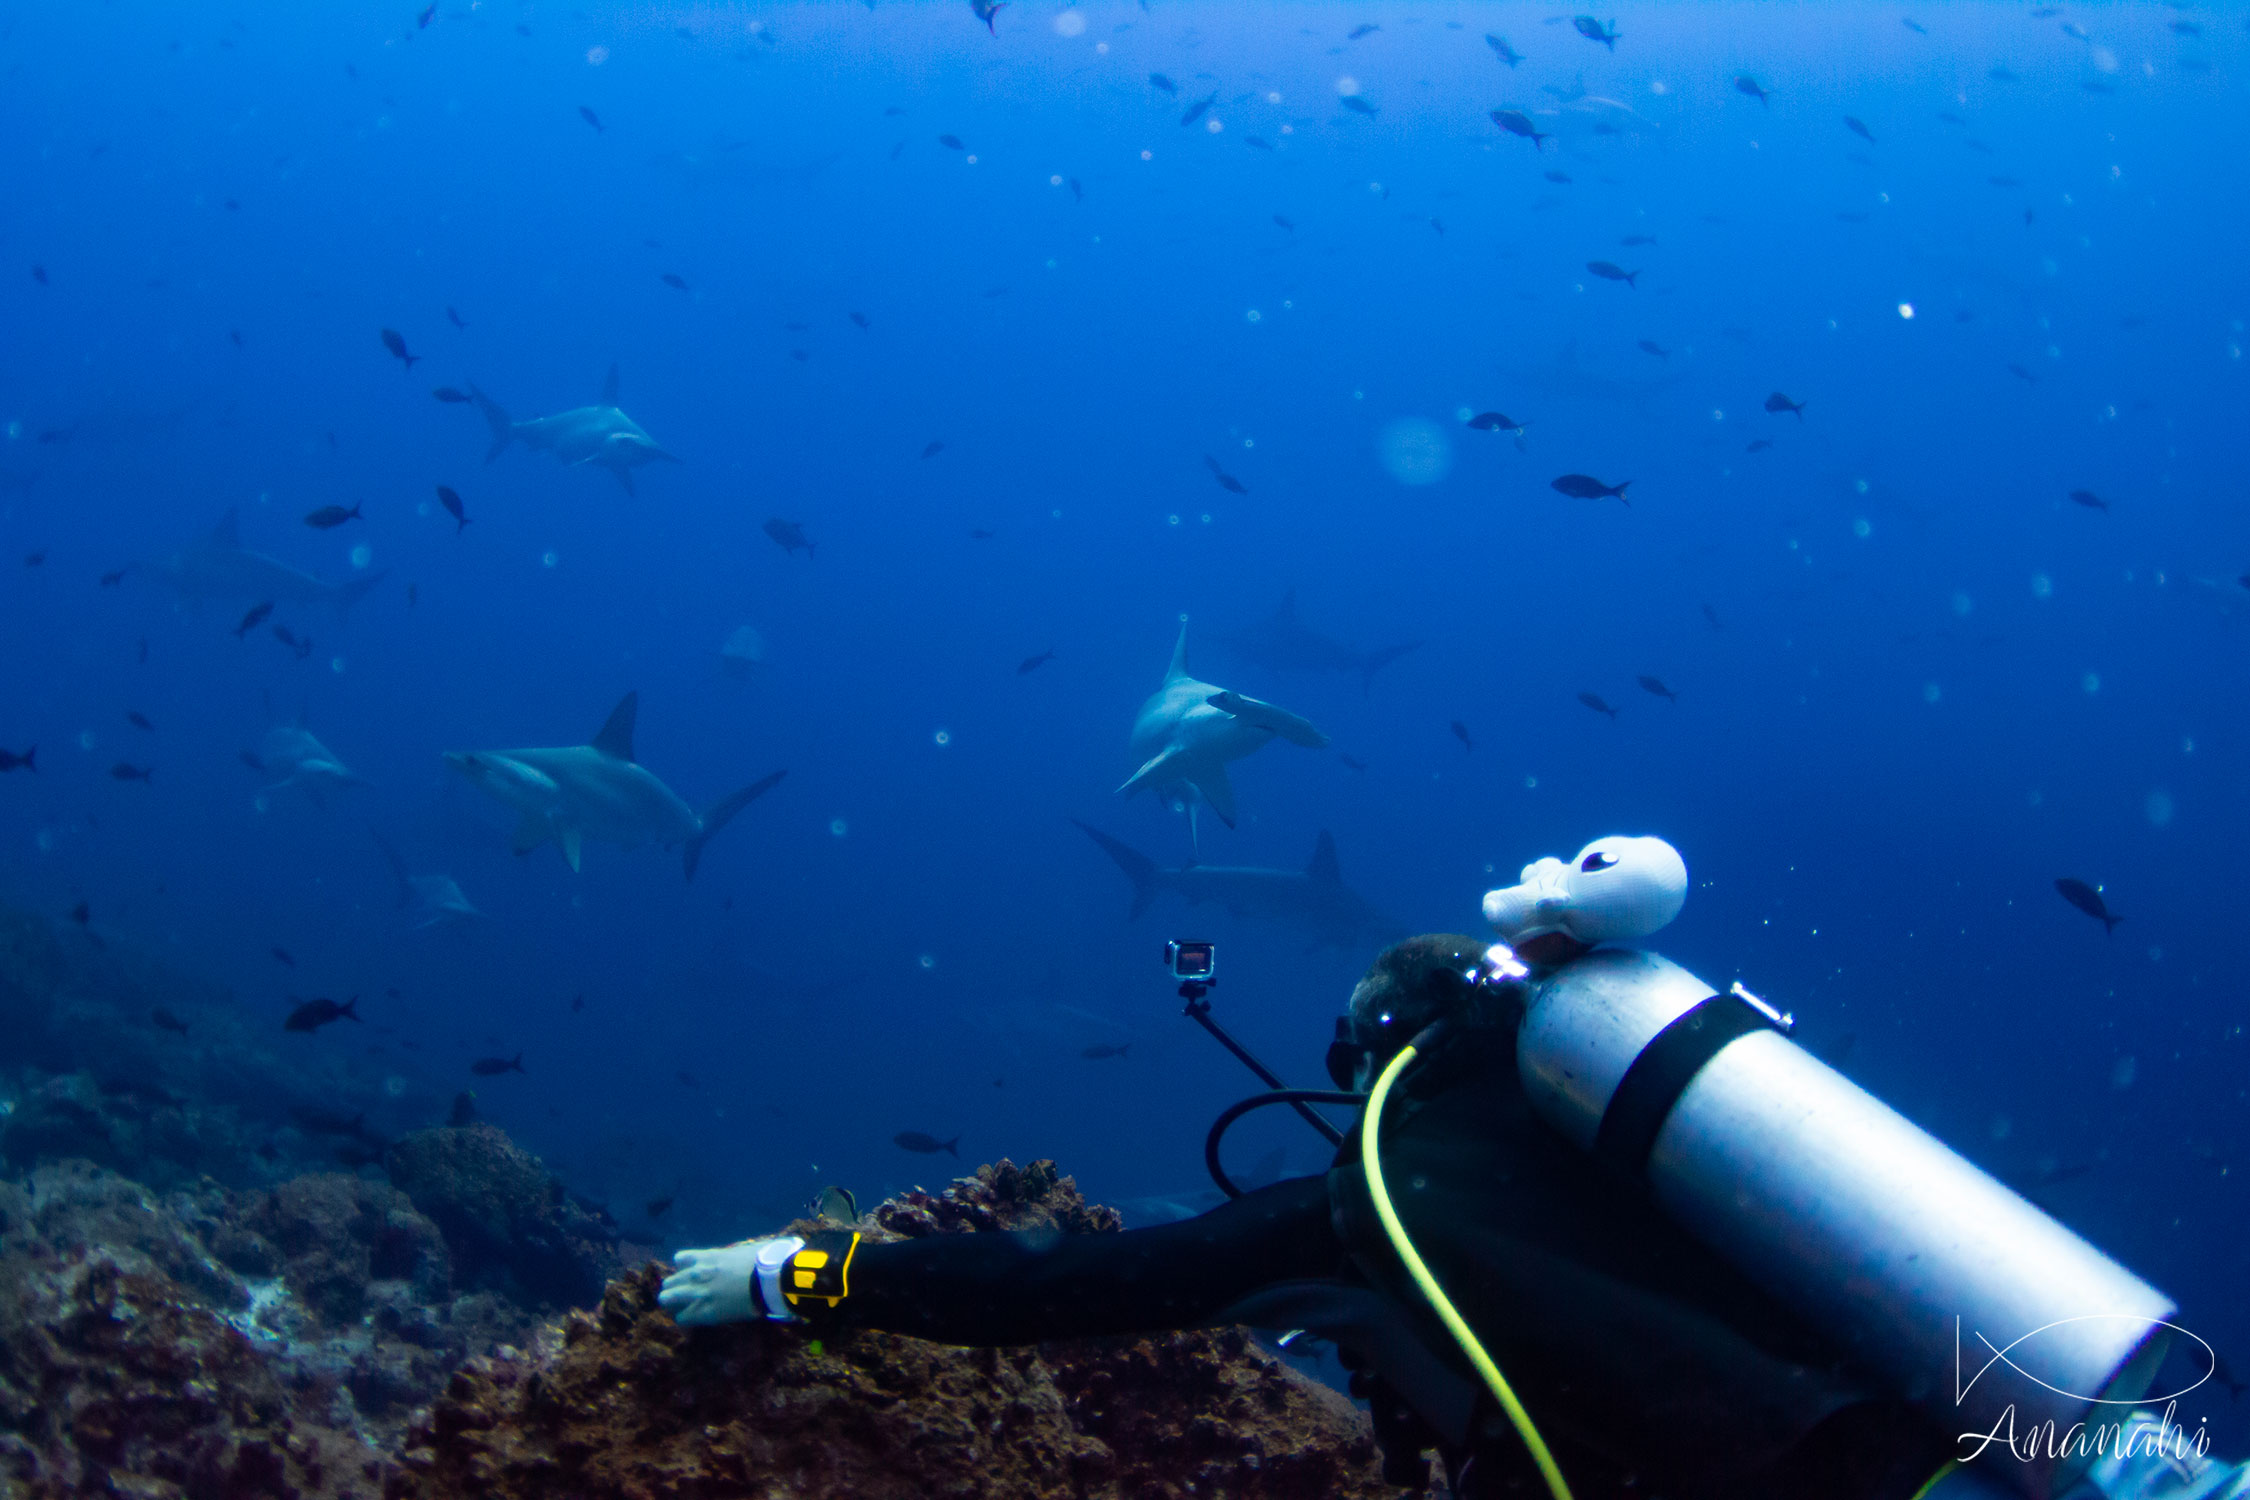 Vision d'un banc de requins marteaux à l'arche de Darwin